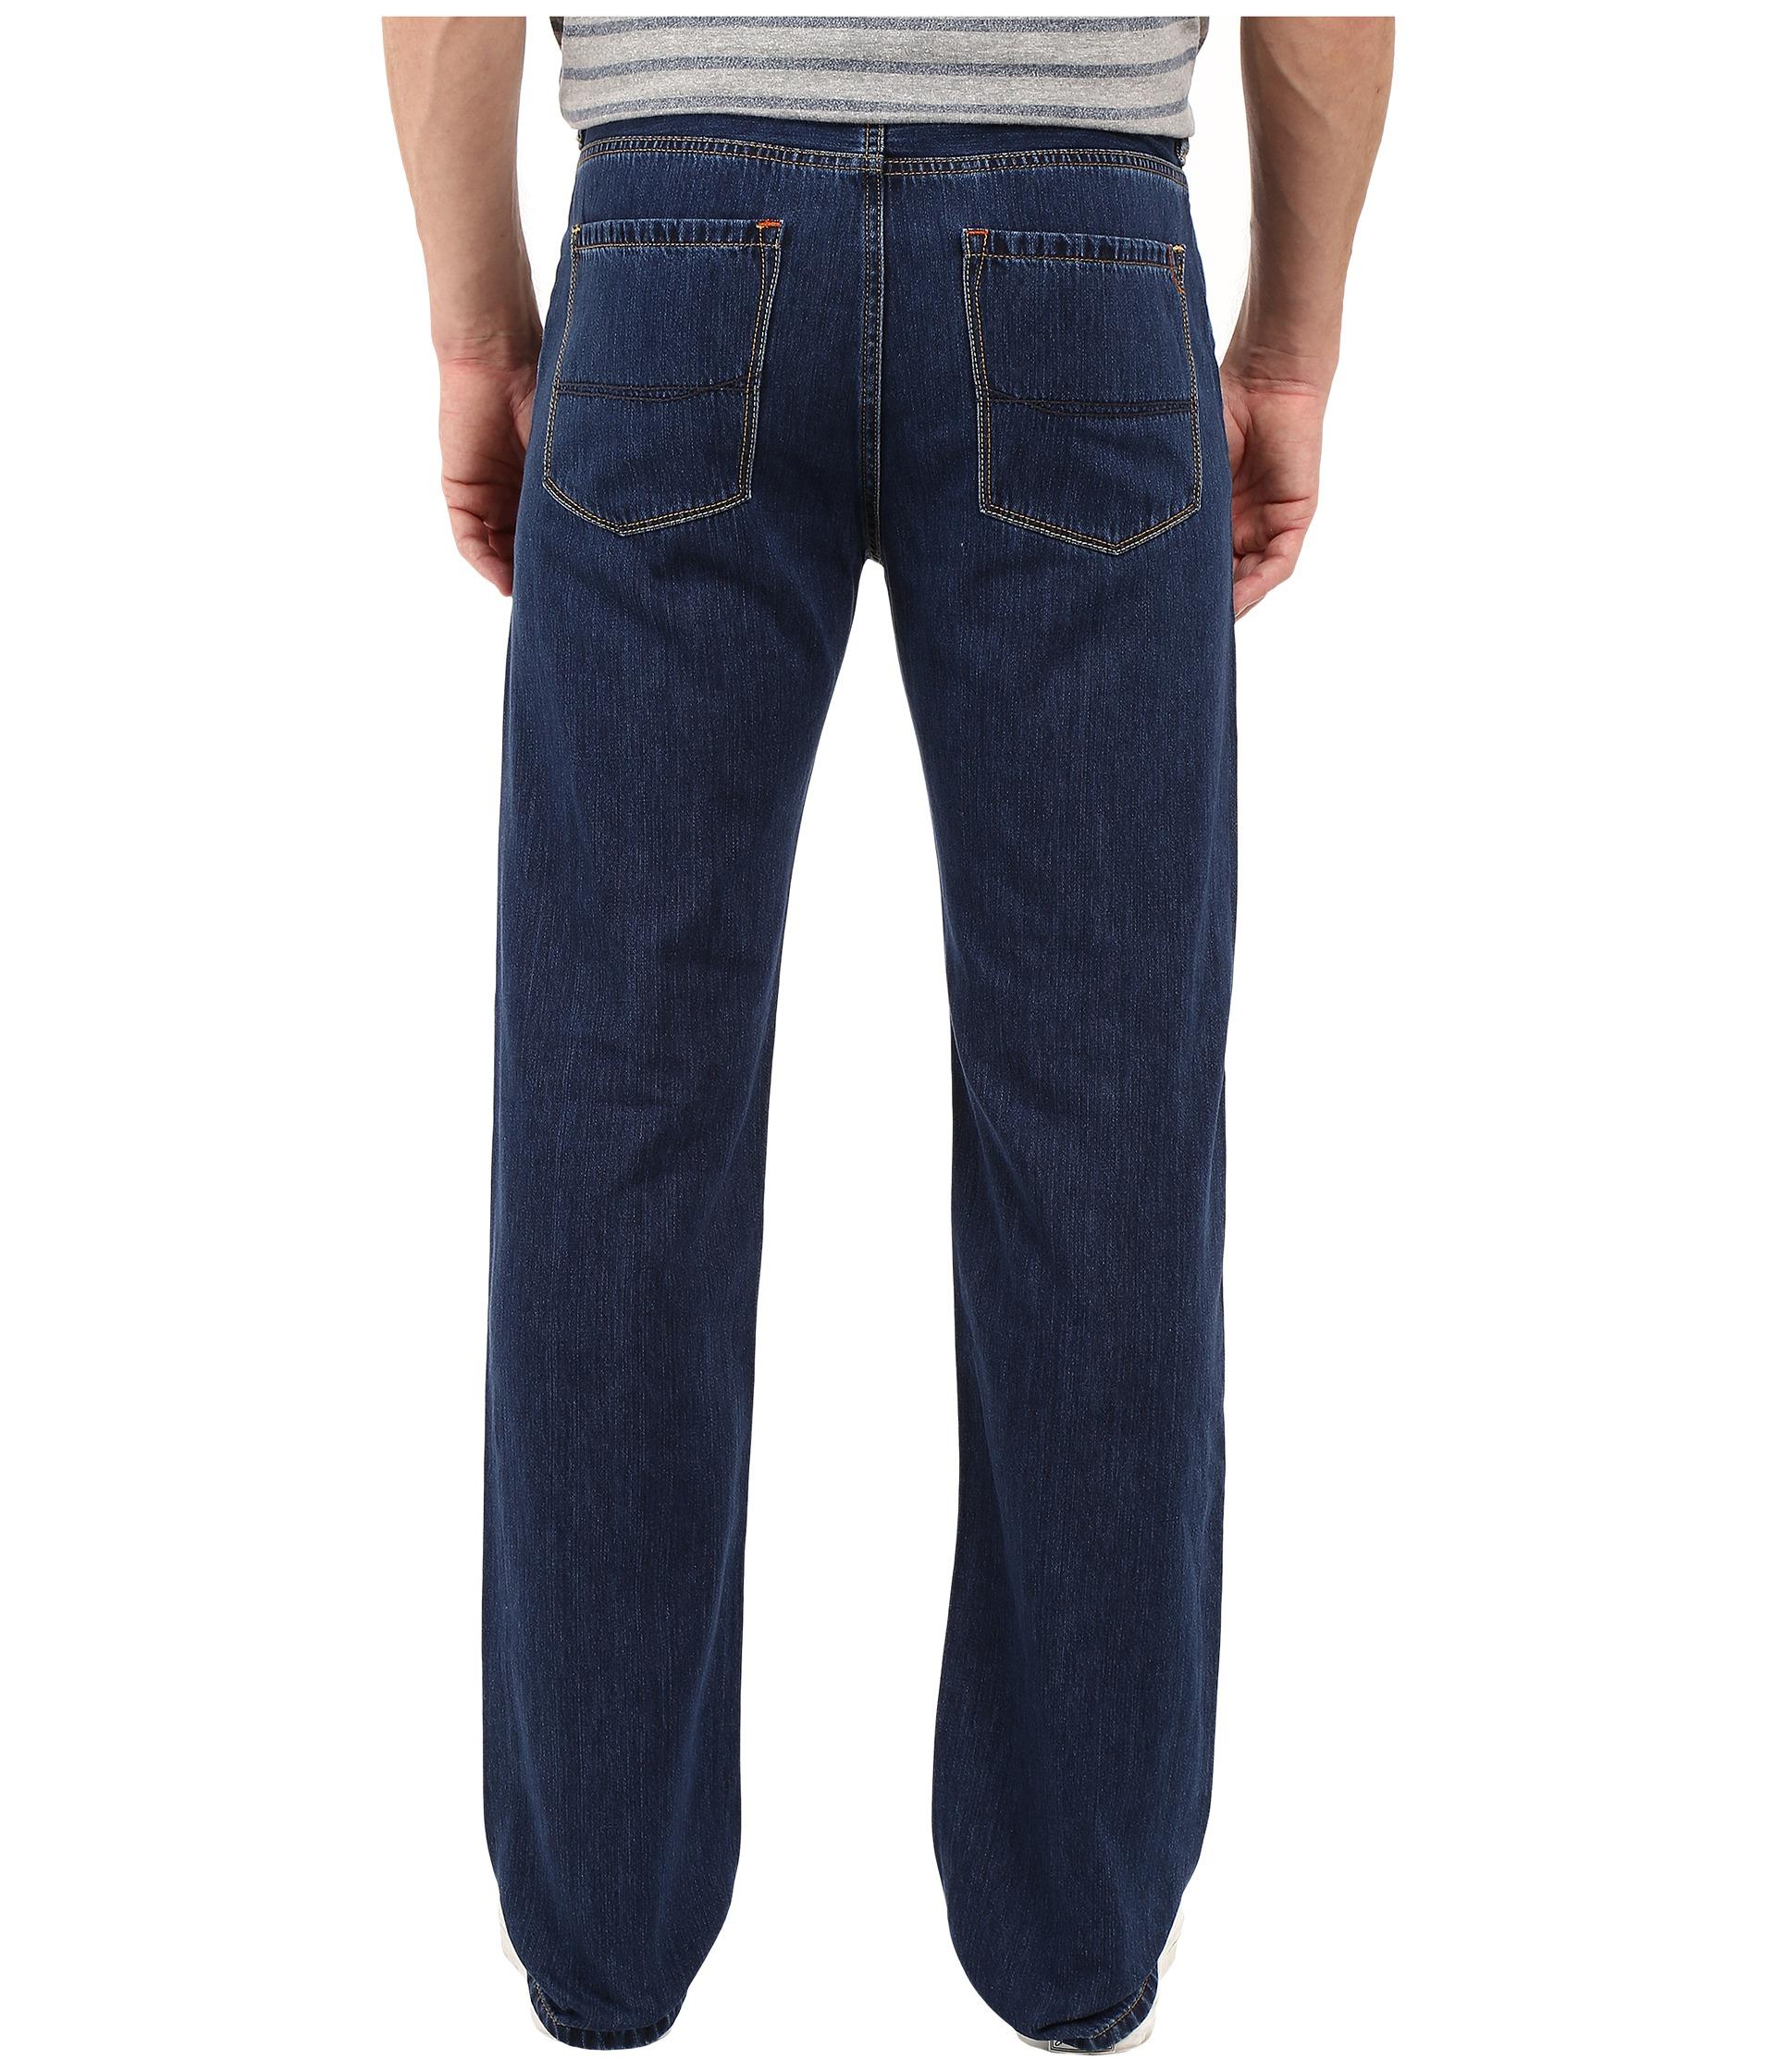 Lyst - Tommy Bahama Coastal Island Standard Jean in Blue for Men